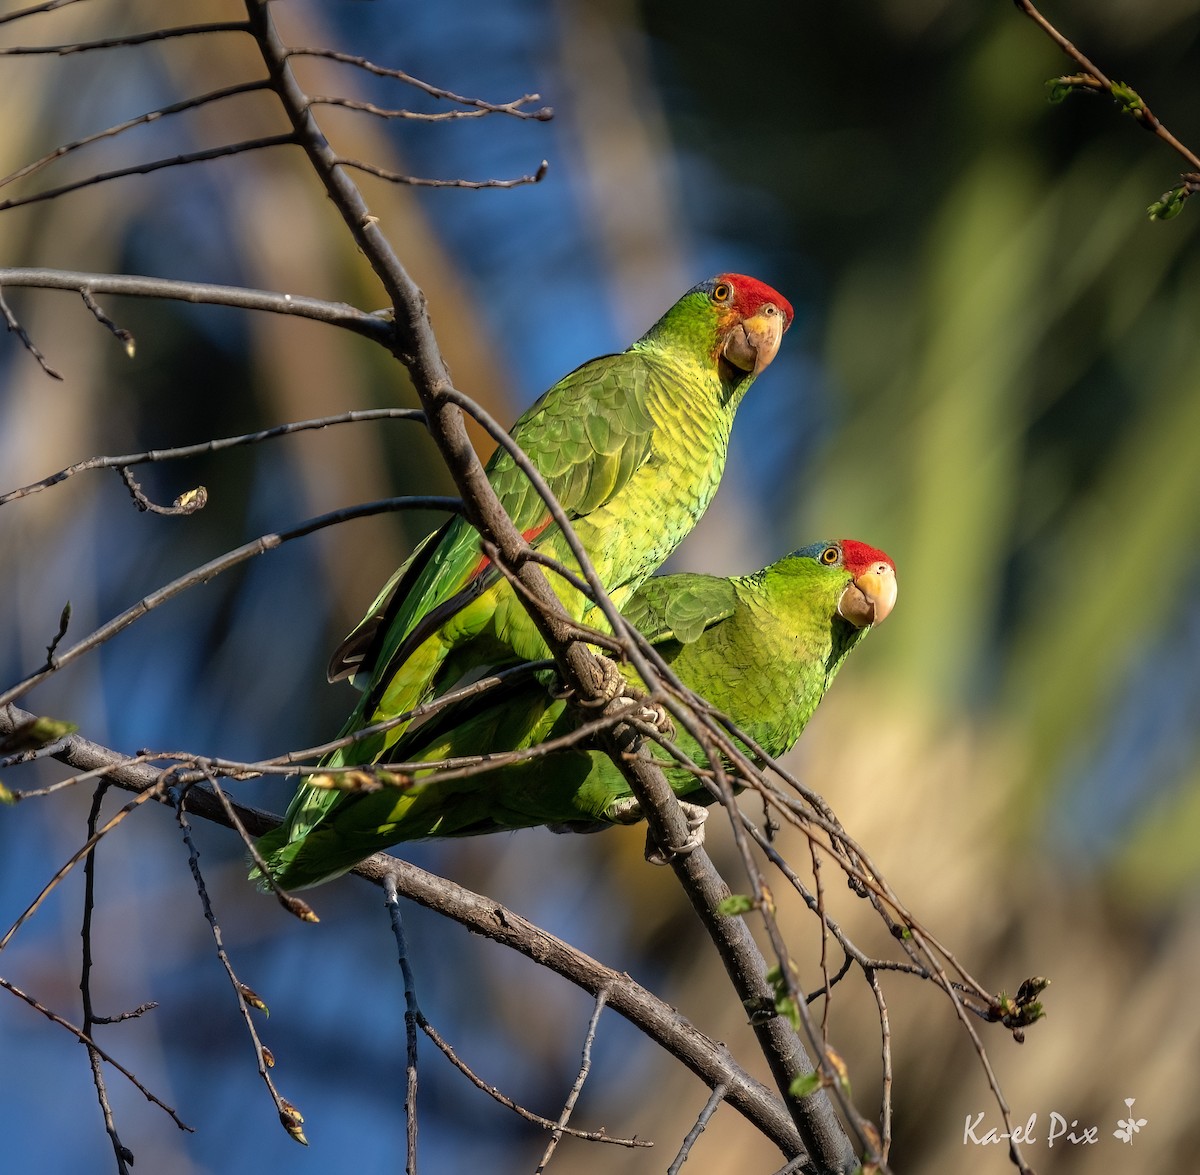 Red-crowned Parrot - Ka-eL Dino